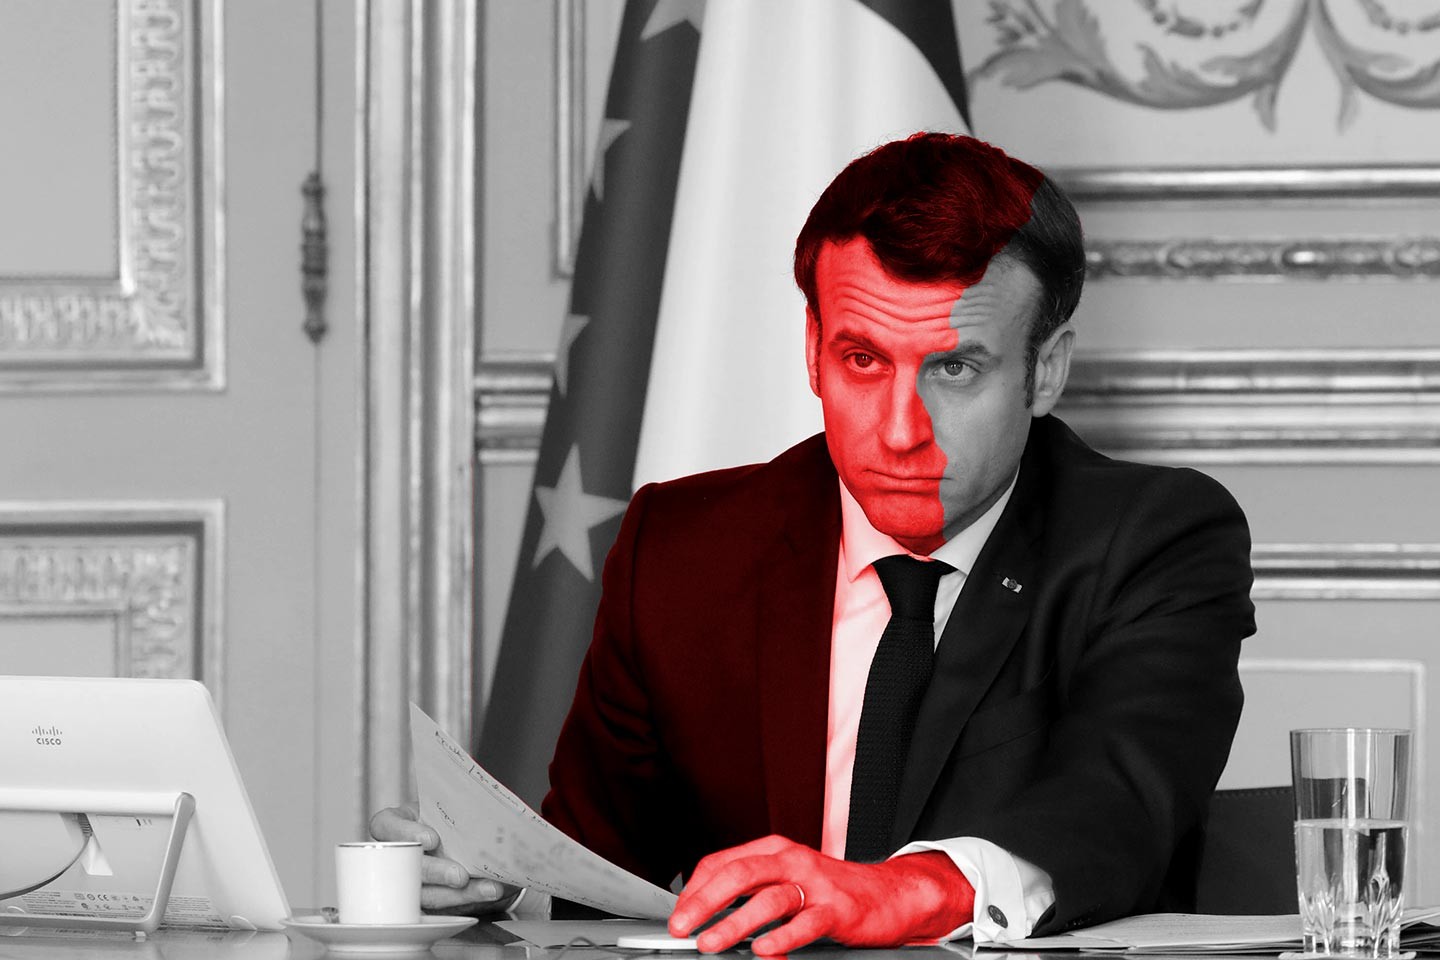 Pour 2022, Macron met ses troupes en ordre d’En marche